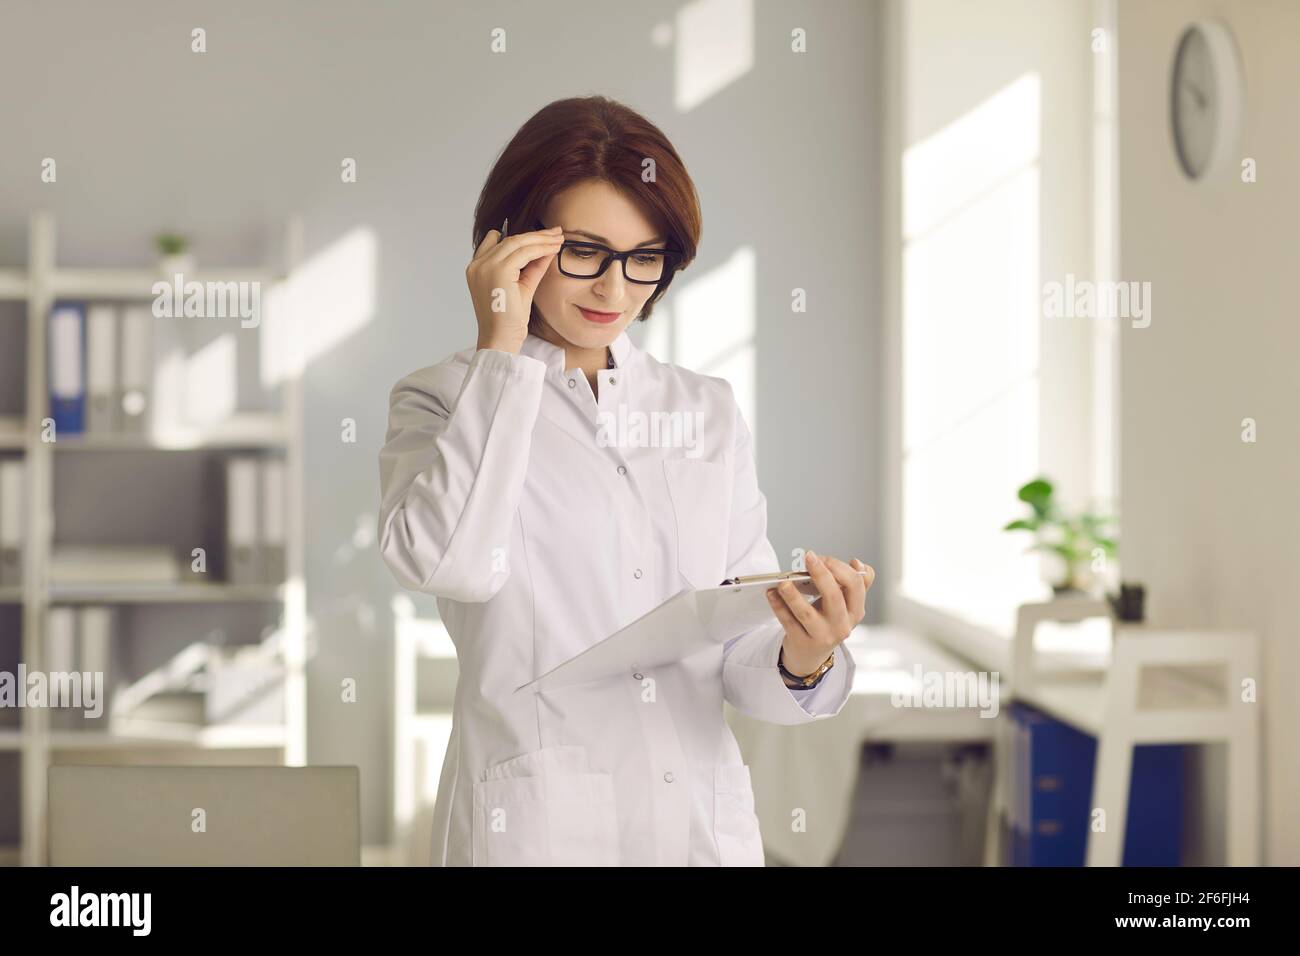 Femme médecin professionnelle avec des lunettes, qui examine attentivement la carte médicale du patient. Banque D'Images